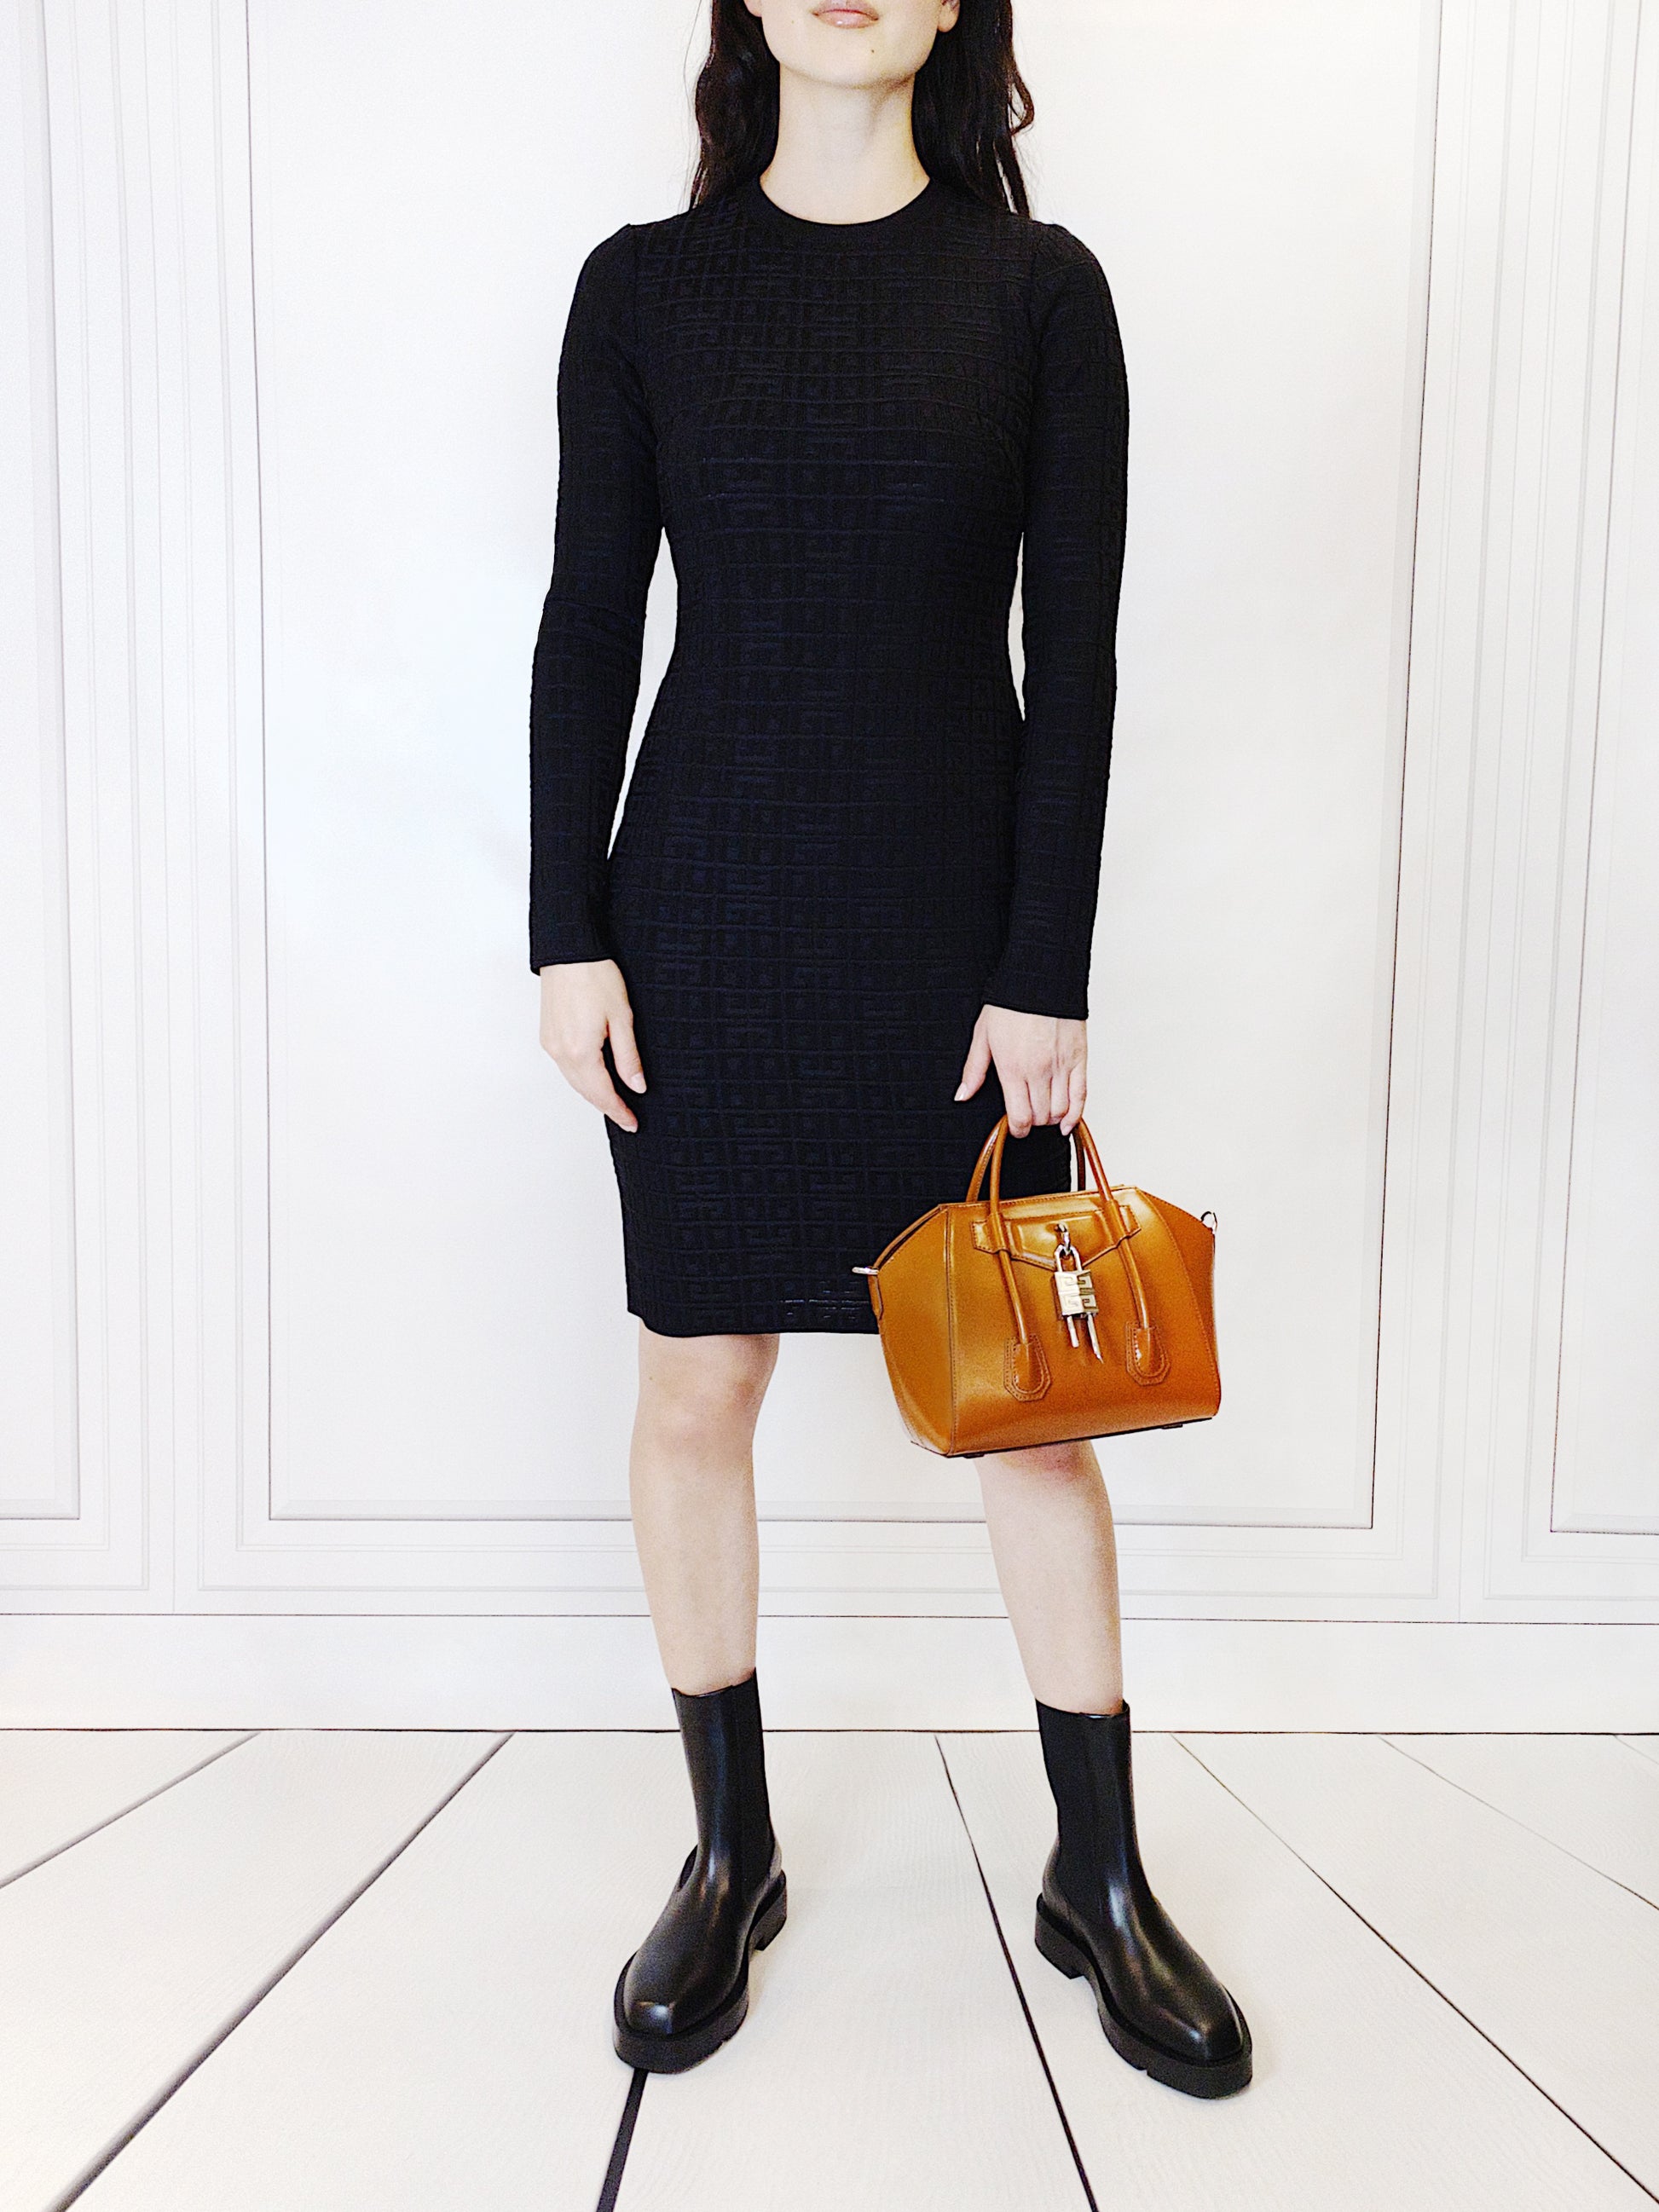 Givenchy Kleid Schwarz  Mit Liebe zum Detail überzeugt dieses Kleid von GIVENCHY mit eingestricktem Logo-Emblem, sowie einem silbernen Logo-Reisverschluss auf dem Rücken. Das schlichte Kleid passt perfekt zu eleganten Anlässen und lässt sich sehr einfach und vielseitig kombinieren.